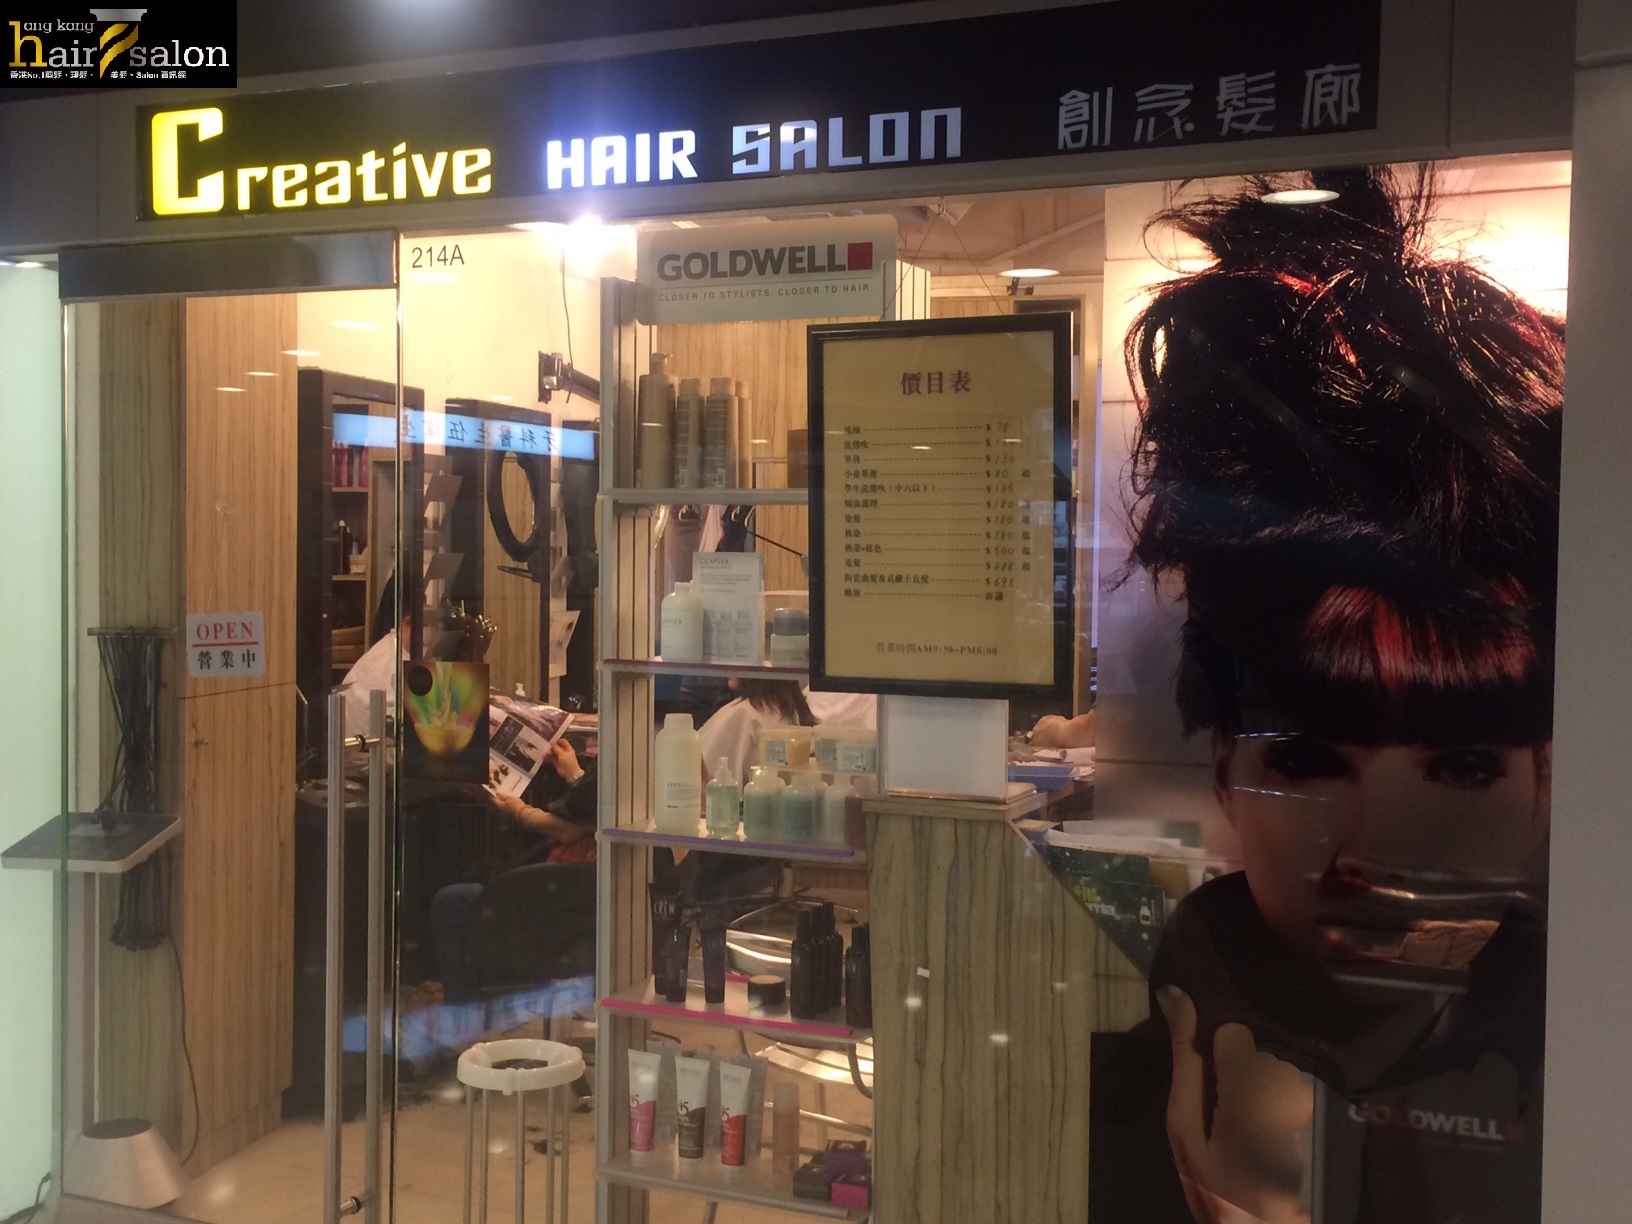 髮型屋: Creative Hair Salon 創念髮廊